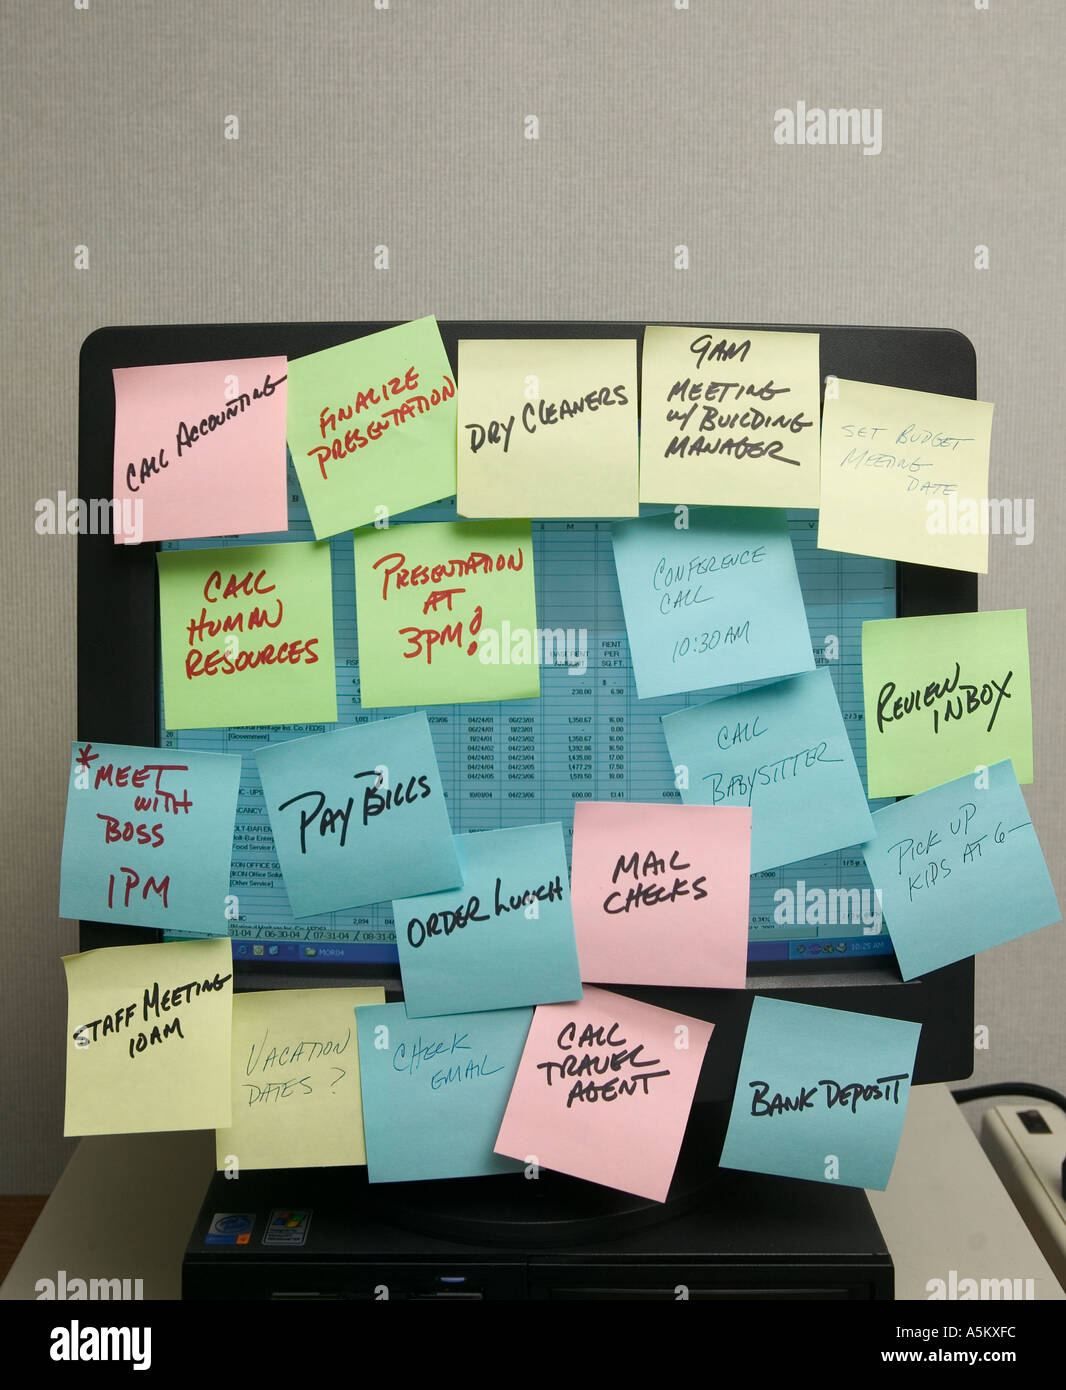 sticky notes on office Stock Photo -